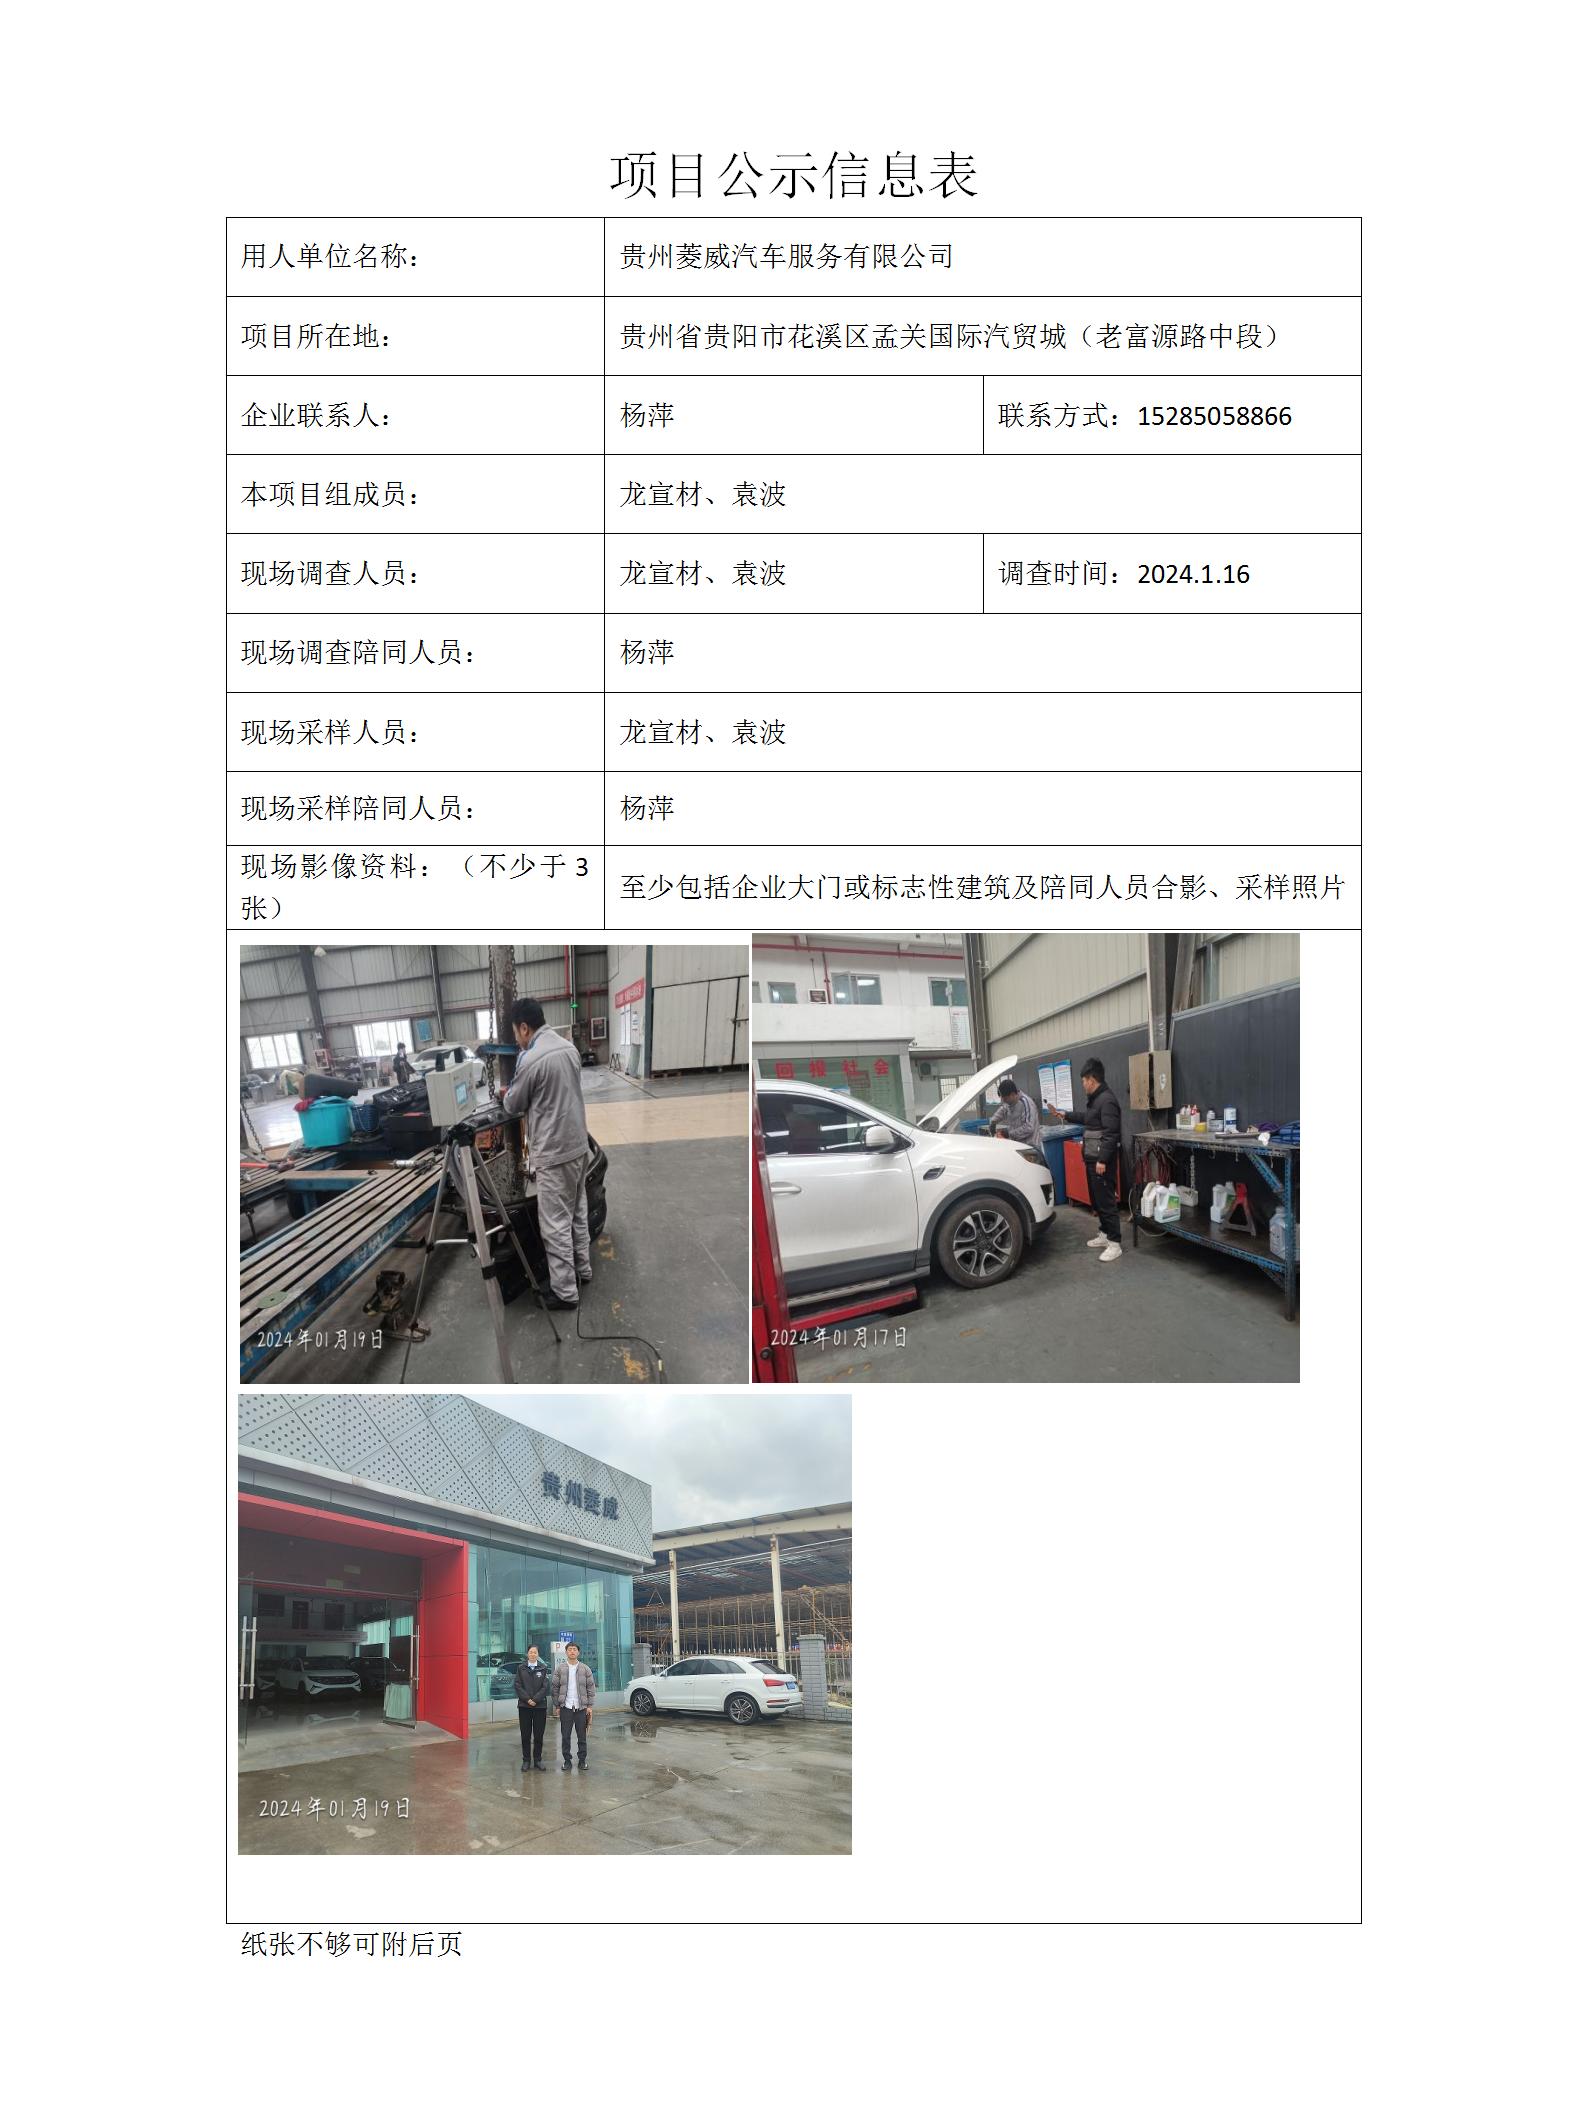 贵州菱威汽车服务有限公司项目公示信息表docx_01.jpg